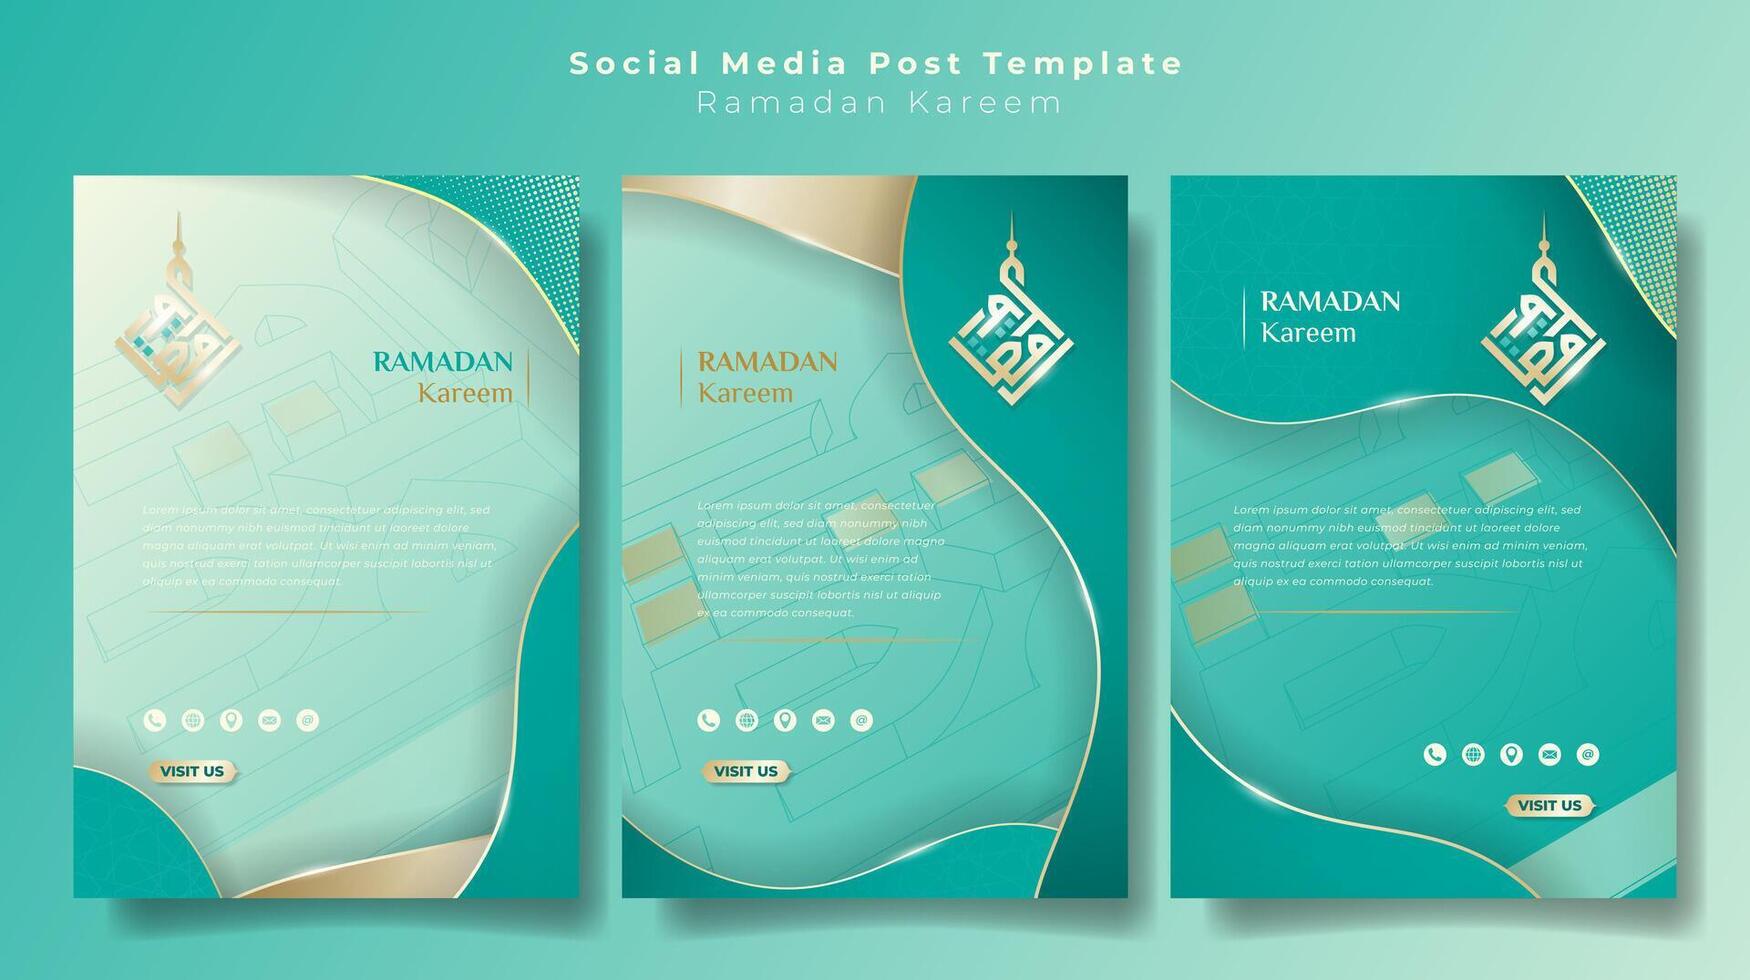 Sozial Medien Post Vorlage im Porträt Design mit Arabisch Kalligraphie Design zum Ramadan kareem Kampagne. Arabisch Text bedeuten ist Ramadan karem. islamisch Hintergrund im Licht Meer Grün vektor